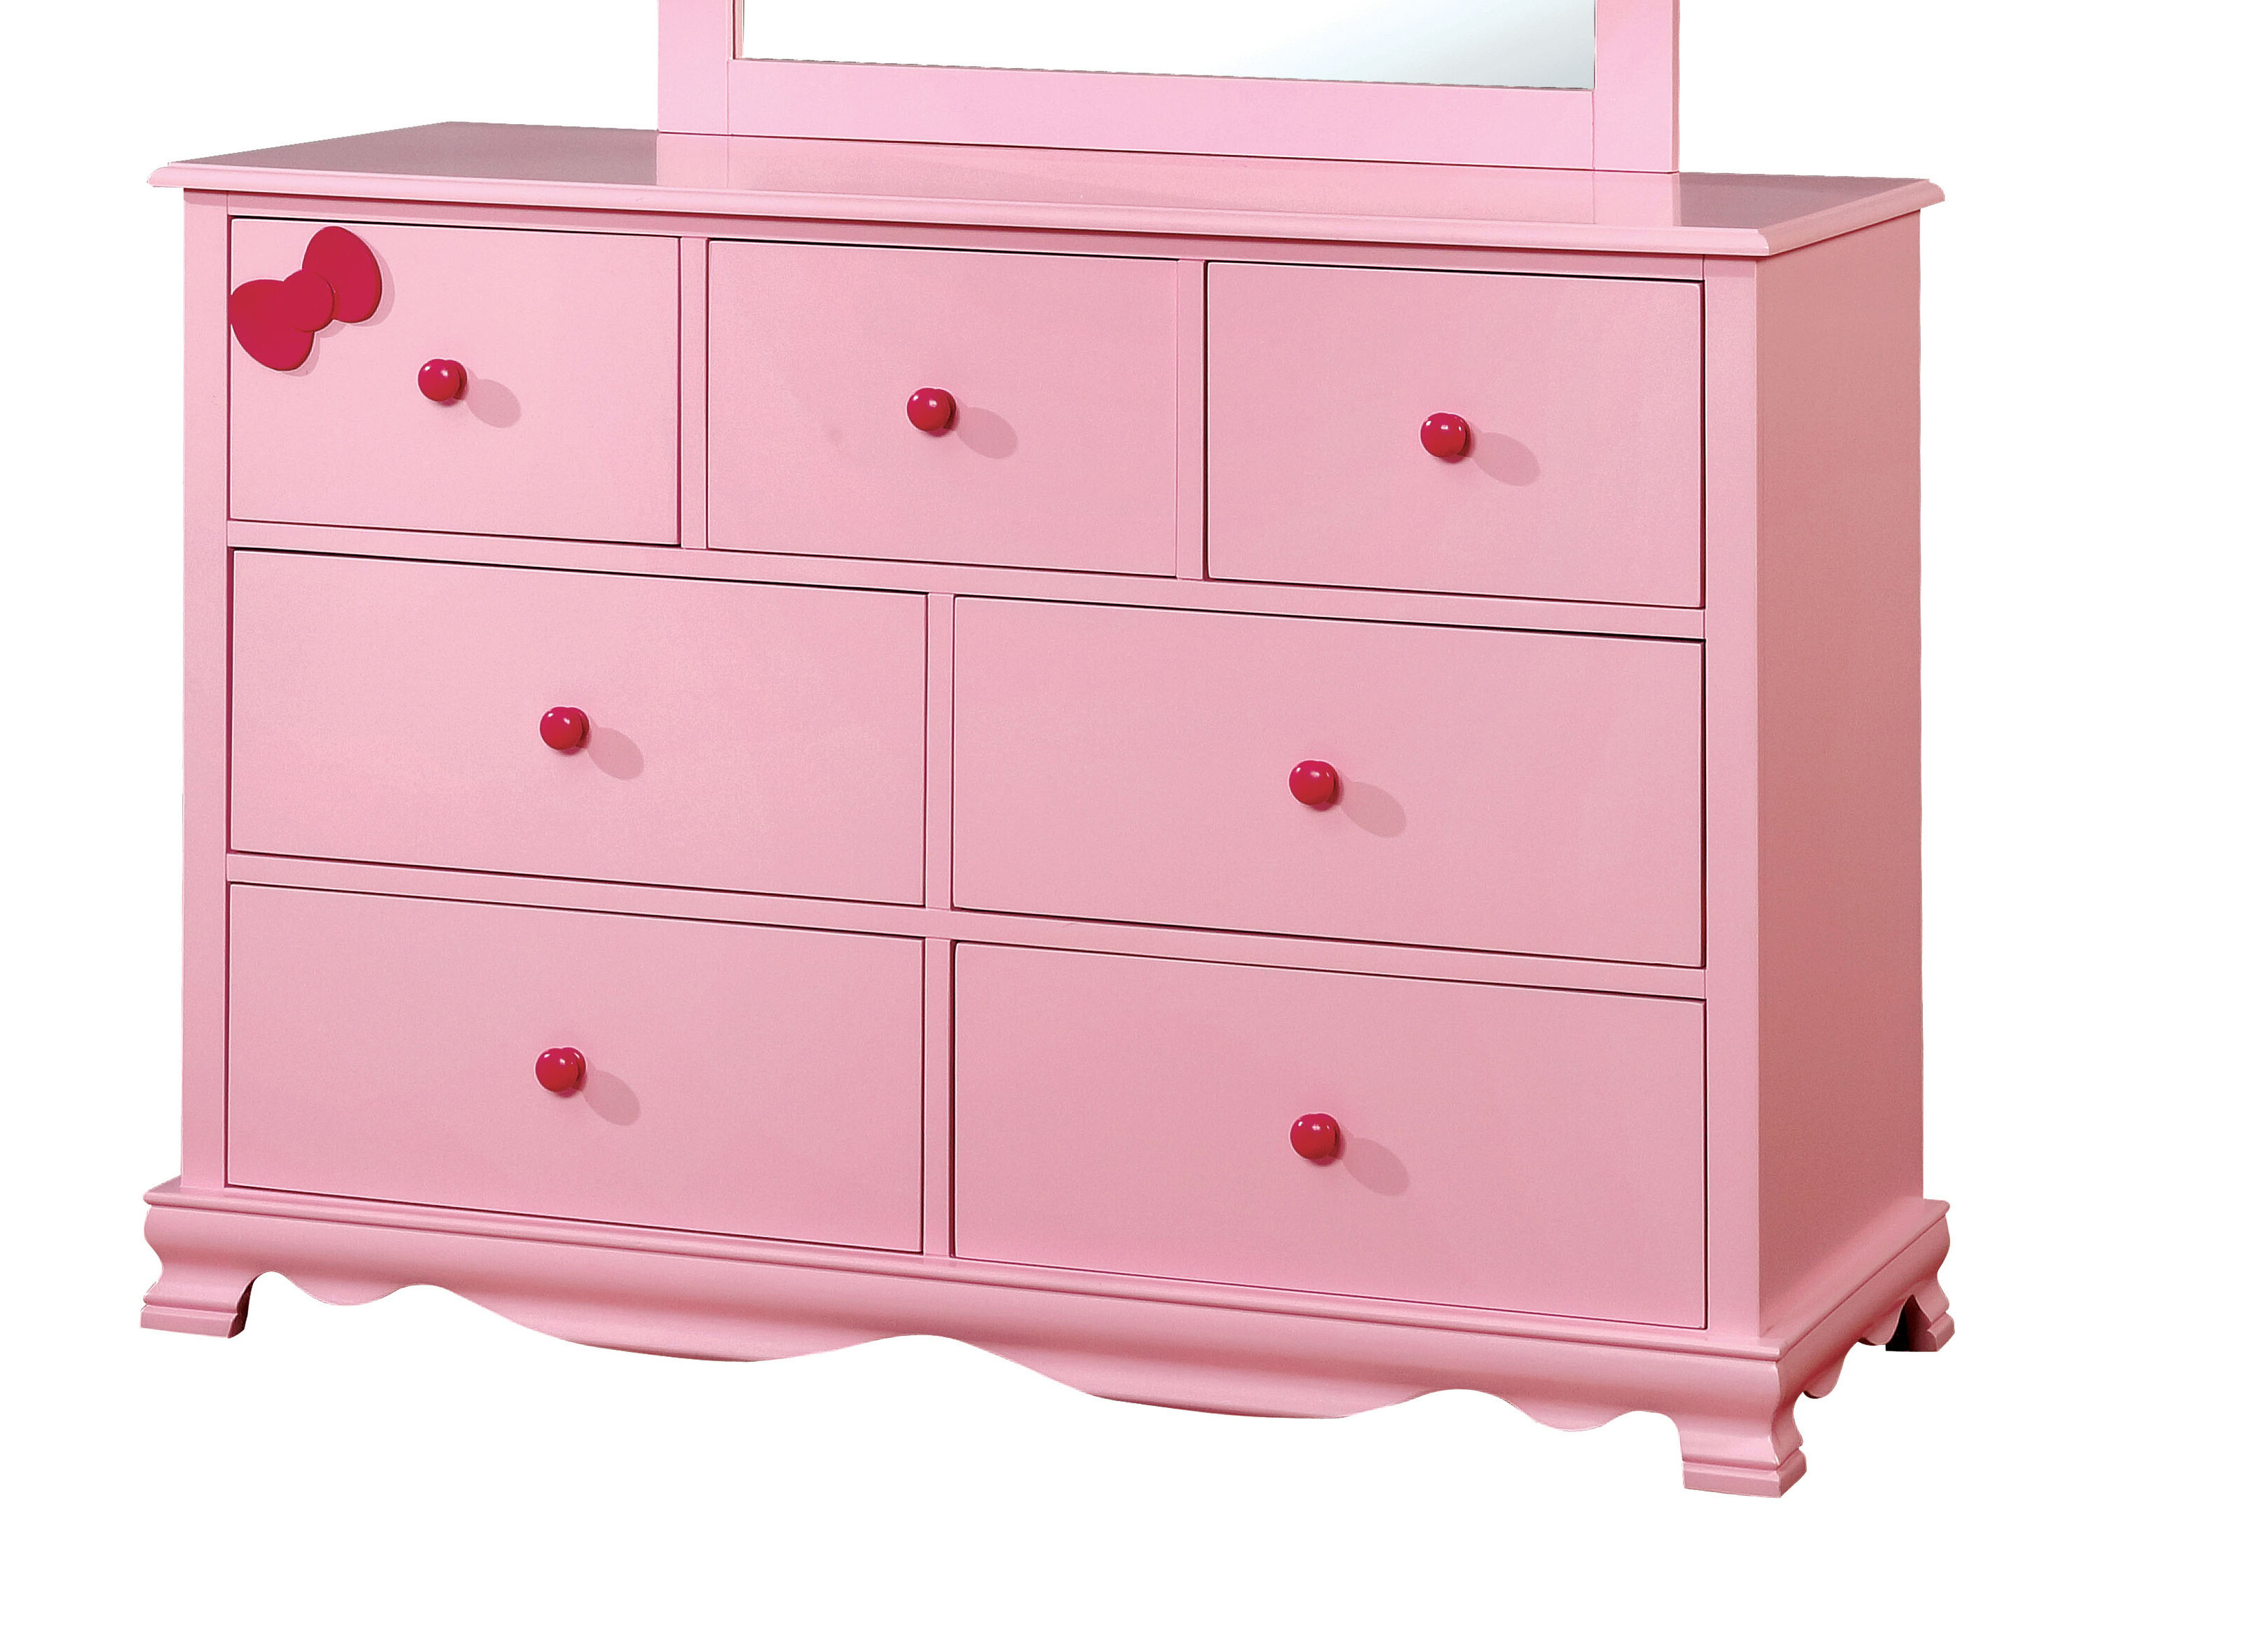 dresser for little girl